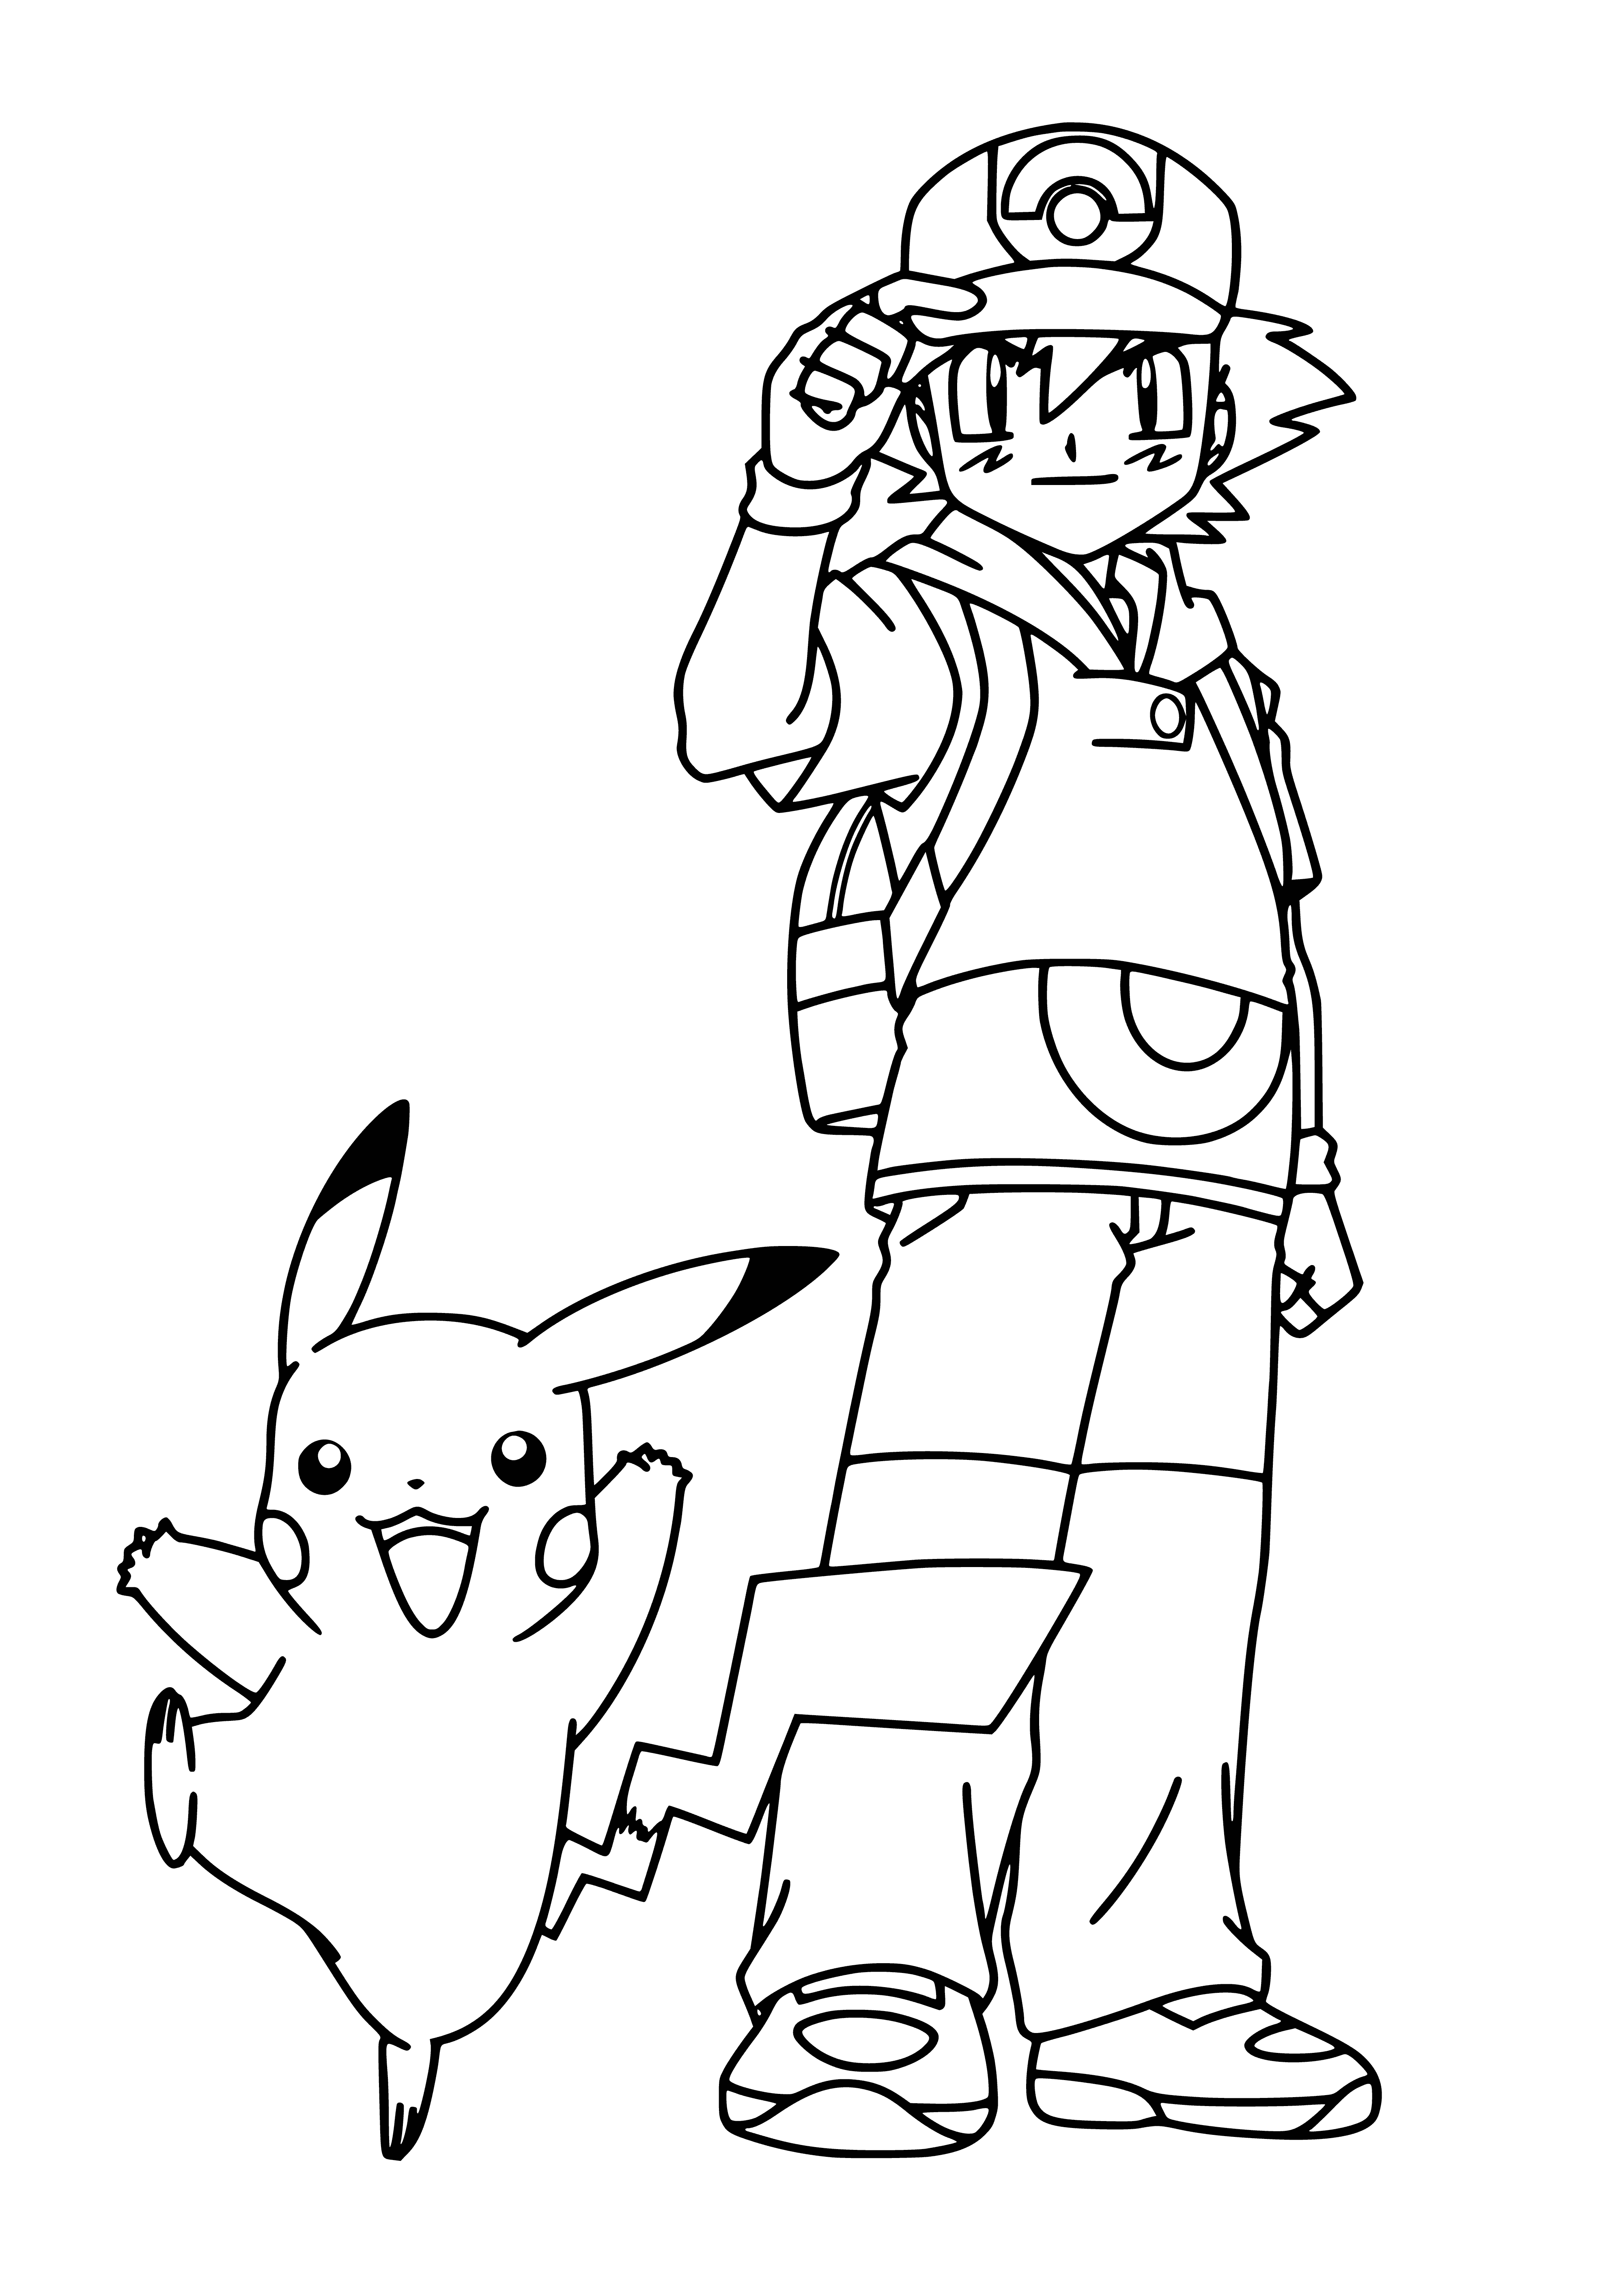 Pikachu et Sacha coloriage